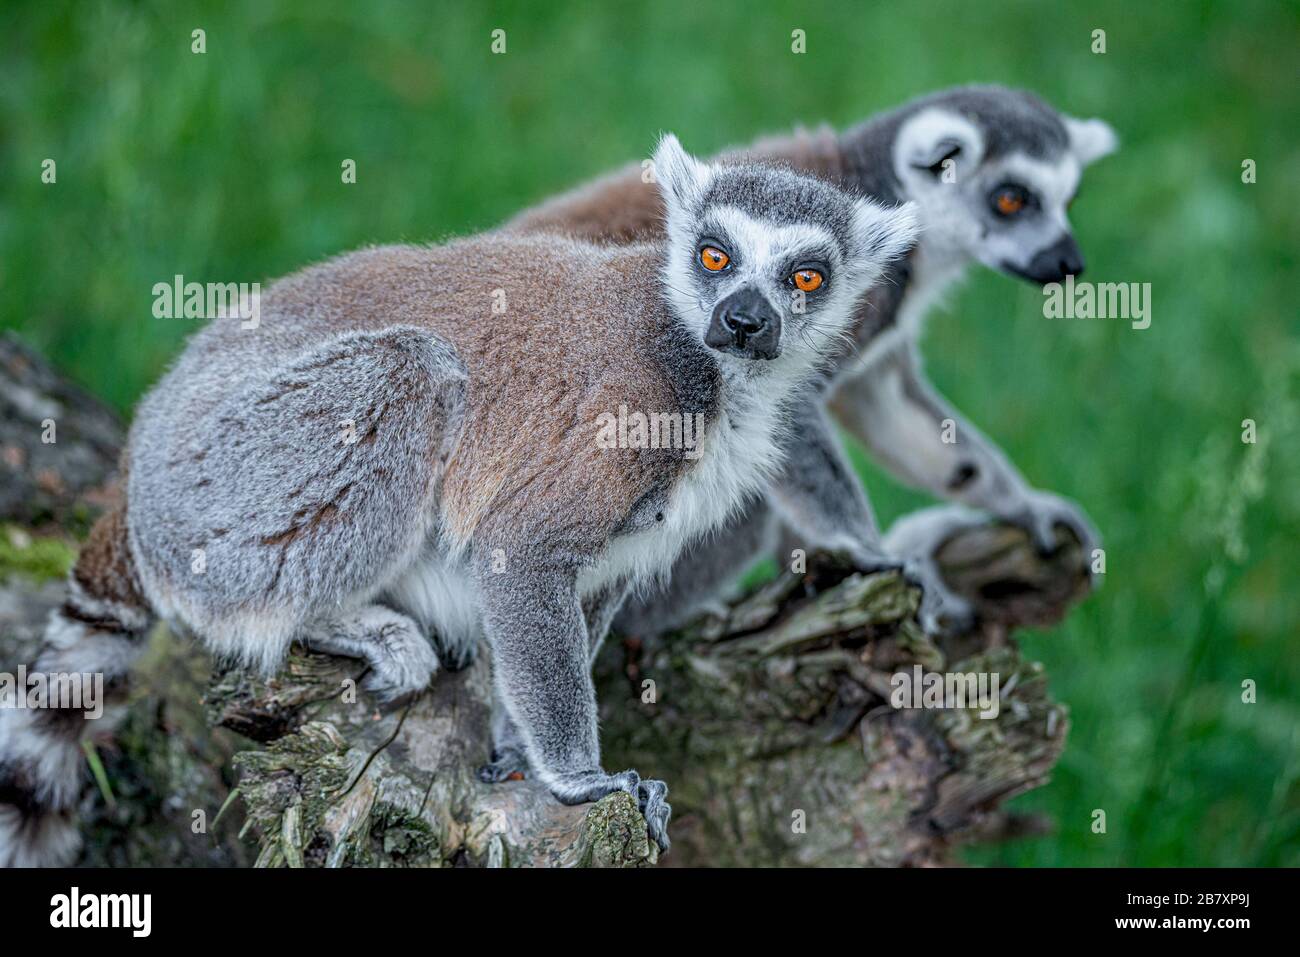 Ritratto di divertenti lemuri malgascio a coda di anello in verde all'aperto godendo l'estate, primo piano, dettagli Foto Stock